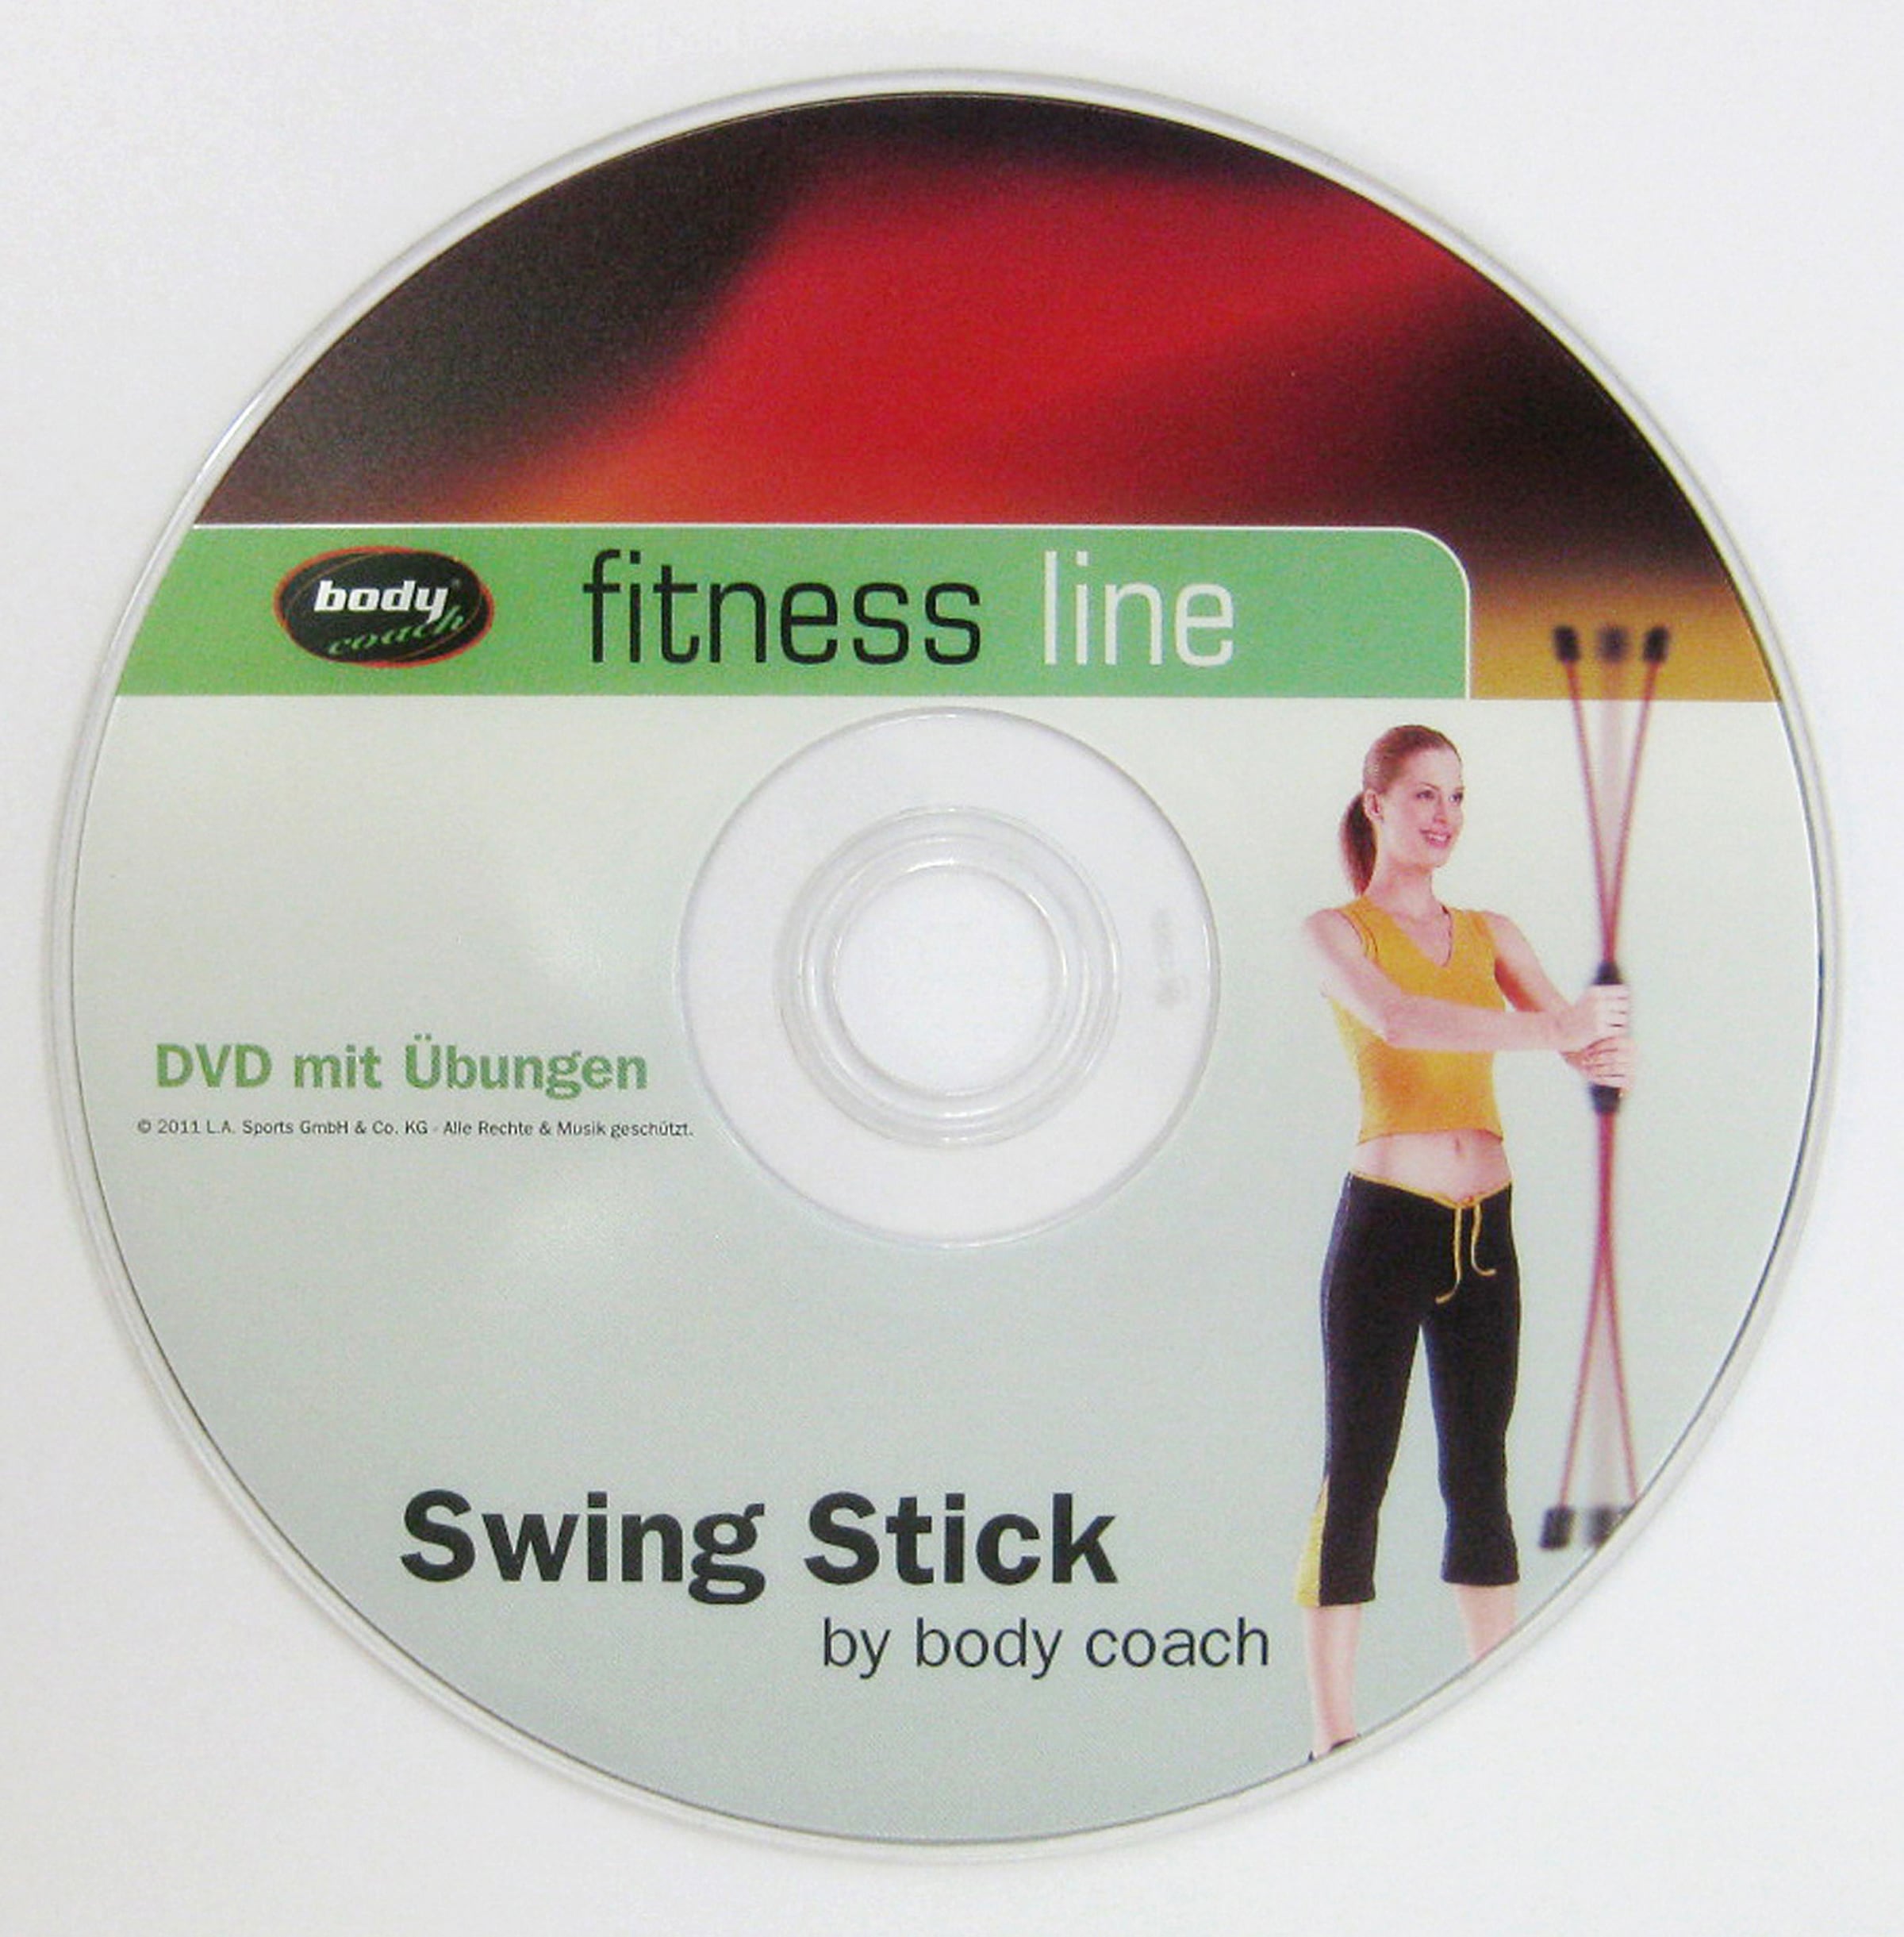 DVD) bei Swingstick, coach body (Inklusive auf OTTO kaufen | OTTO Video-Anleitung